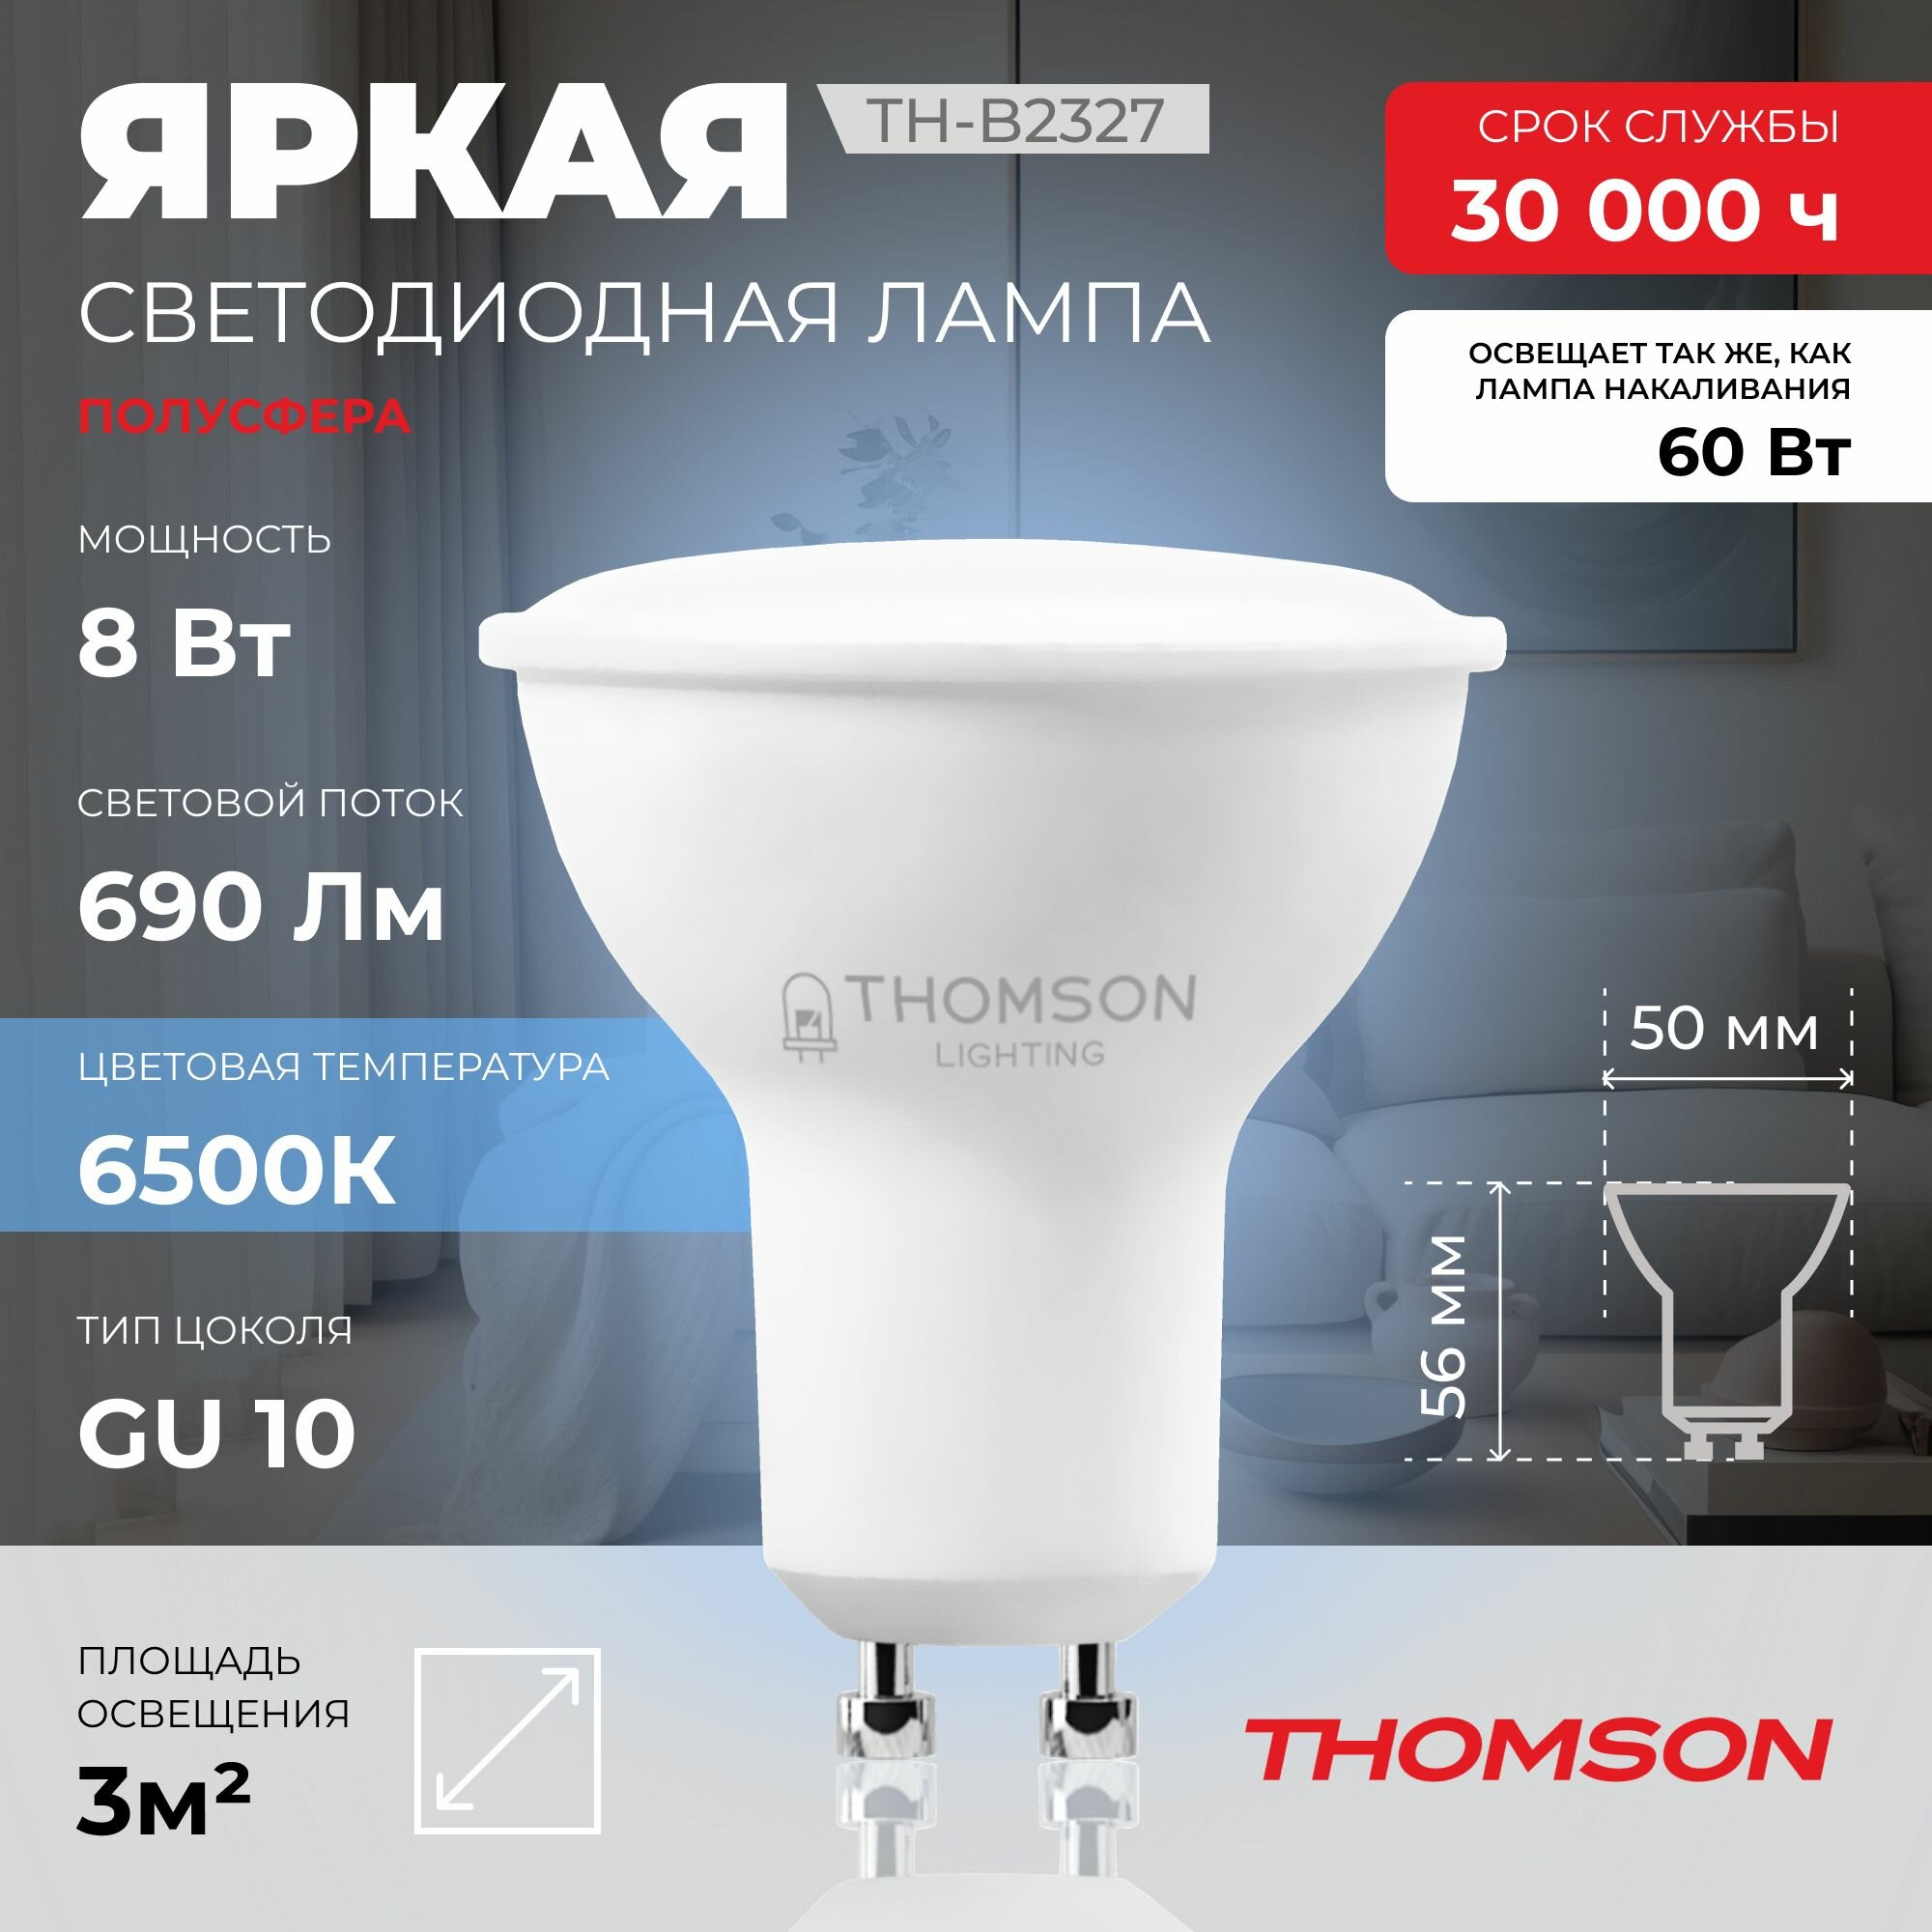 Лампочка Thomson TH-B2327 8 Вт, GU10, полусфера 6500K, MR16, холодный белый свет